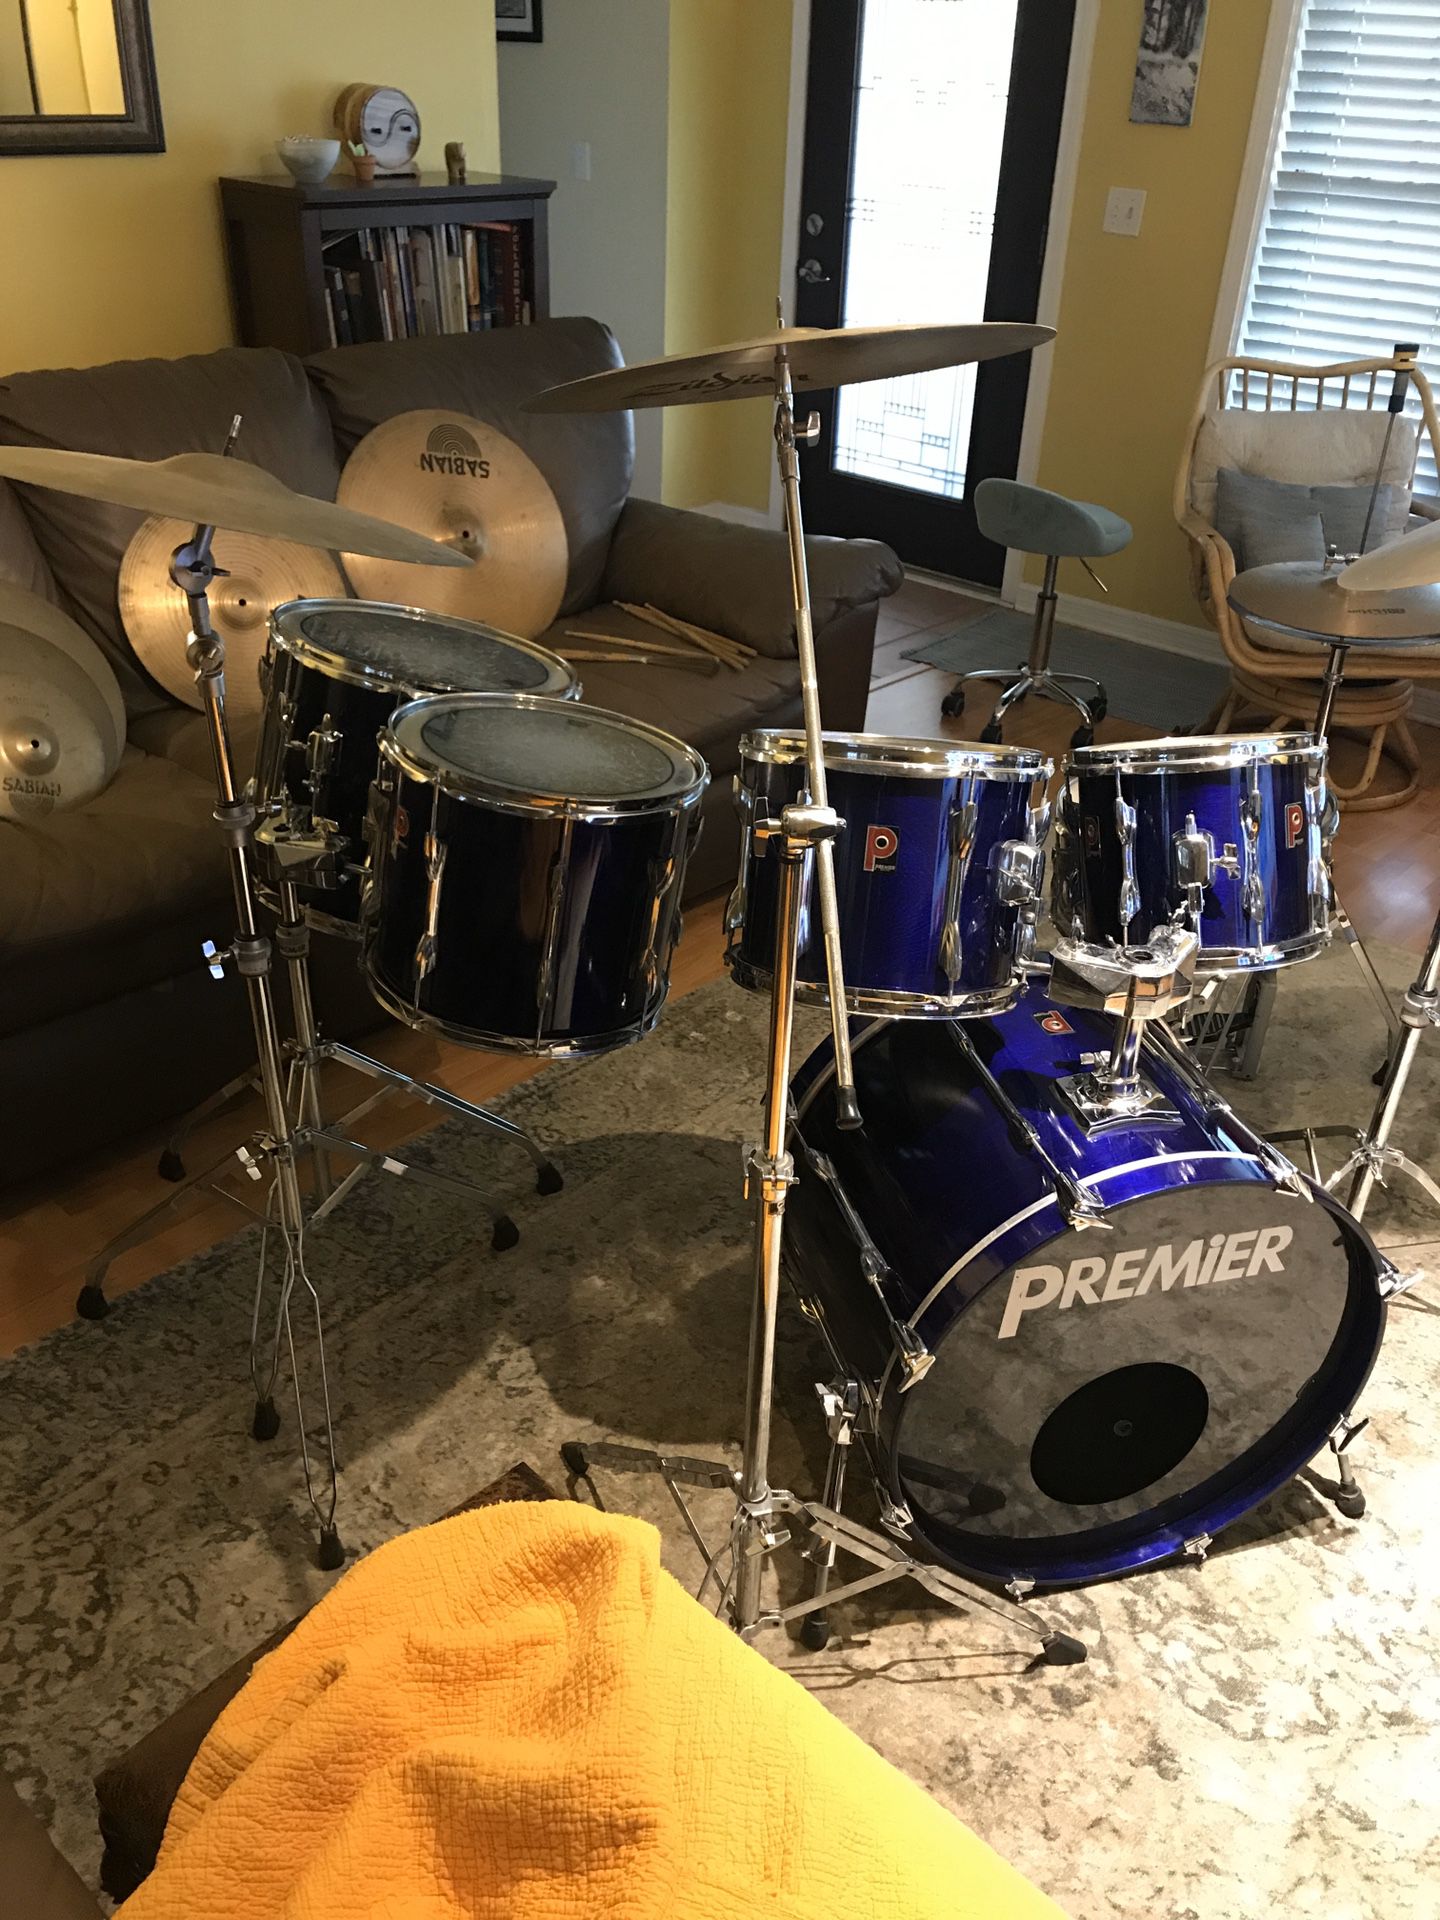 6-piece Premier drum set